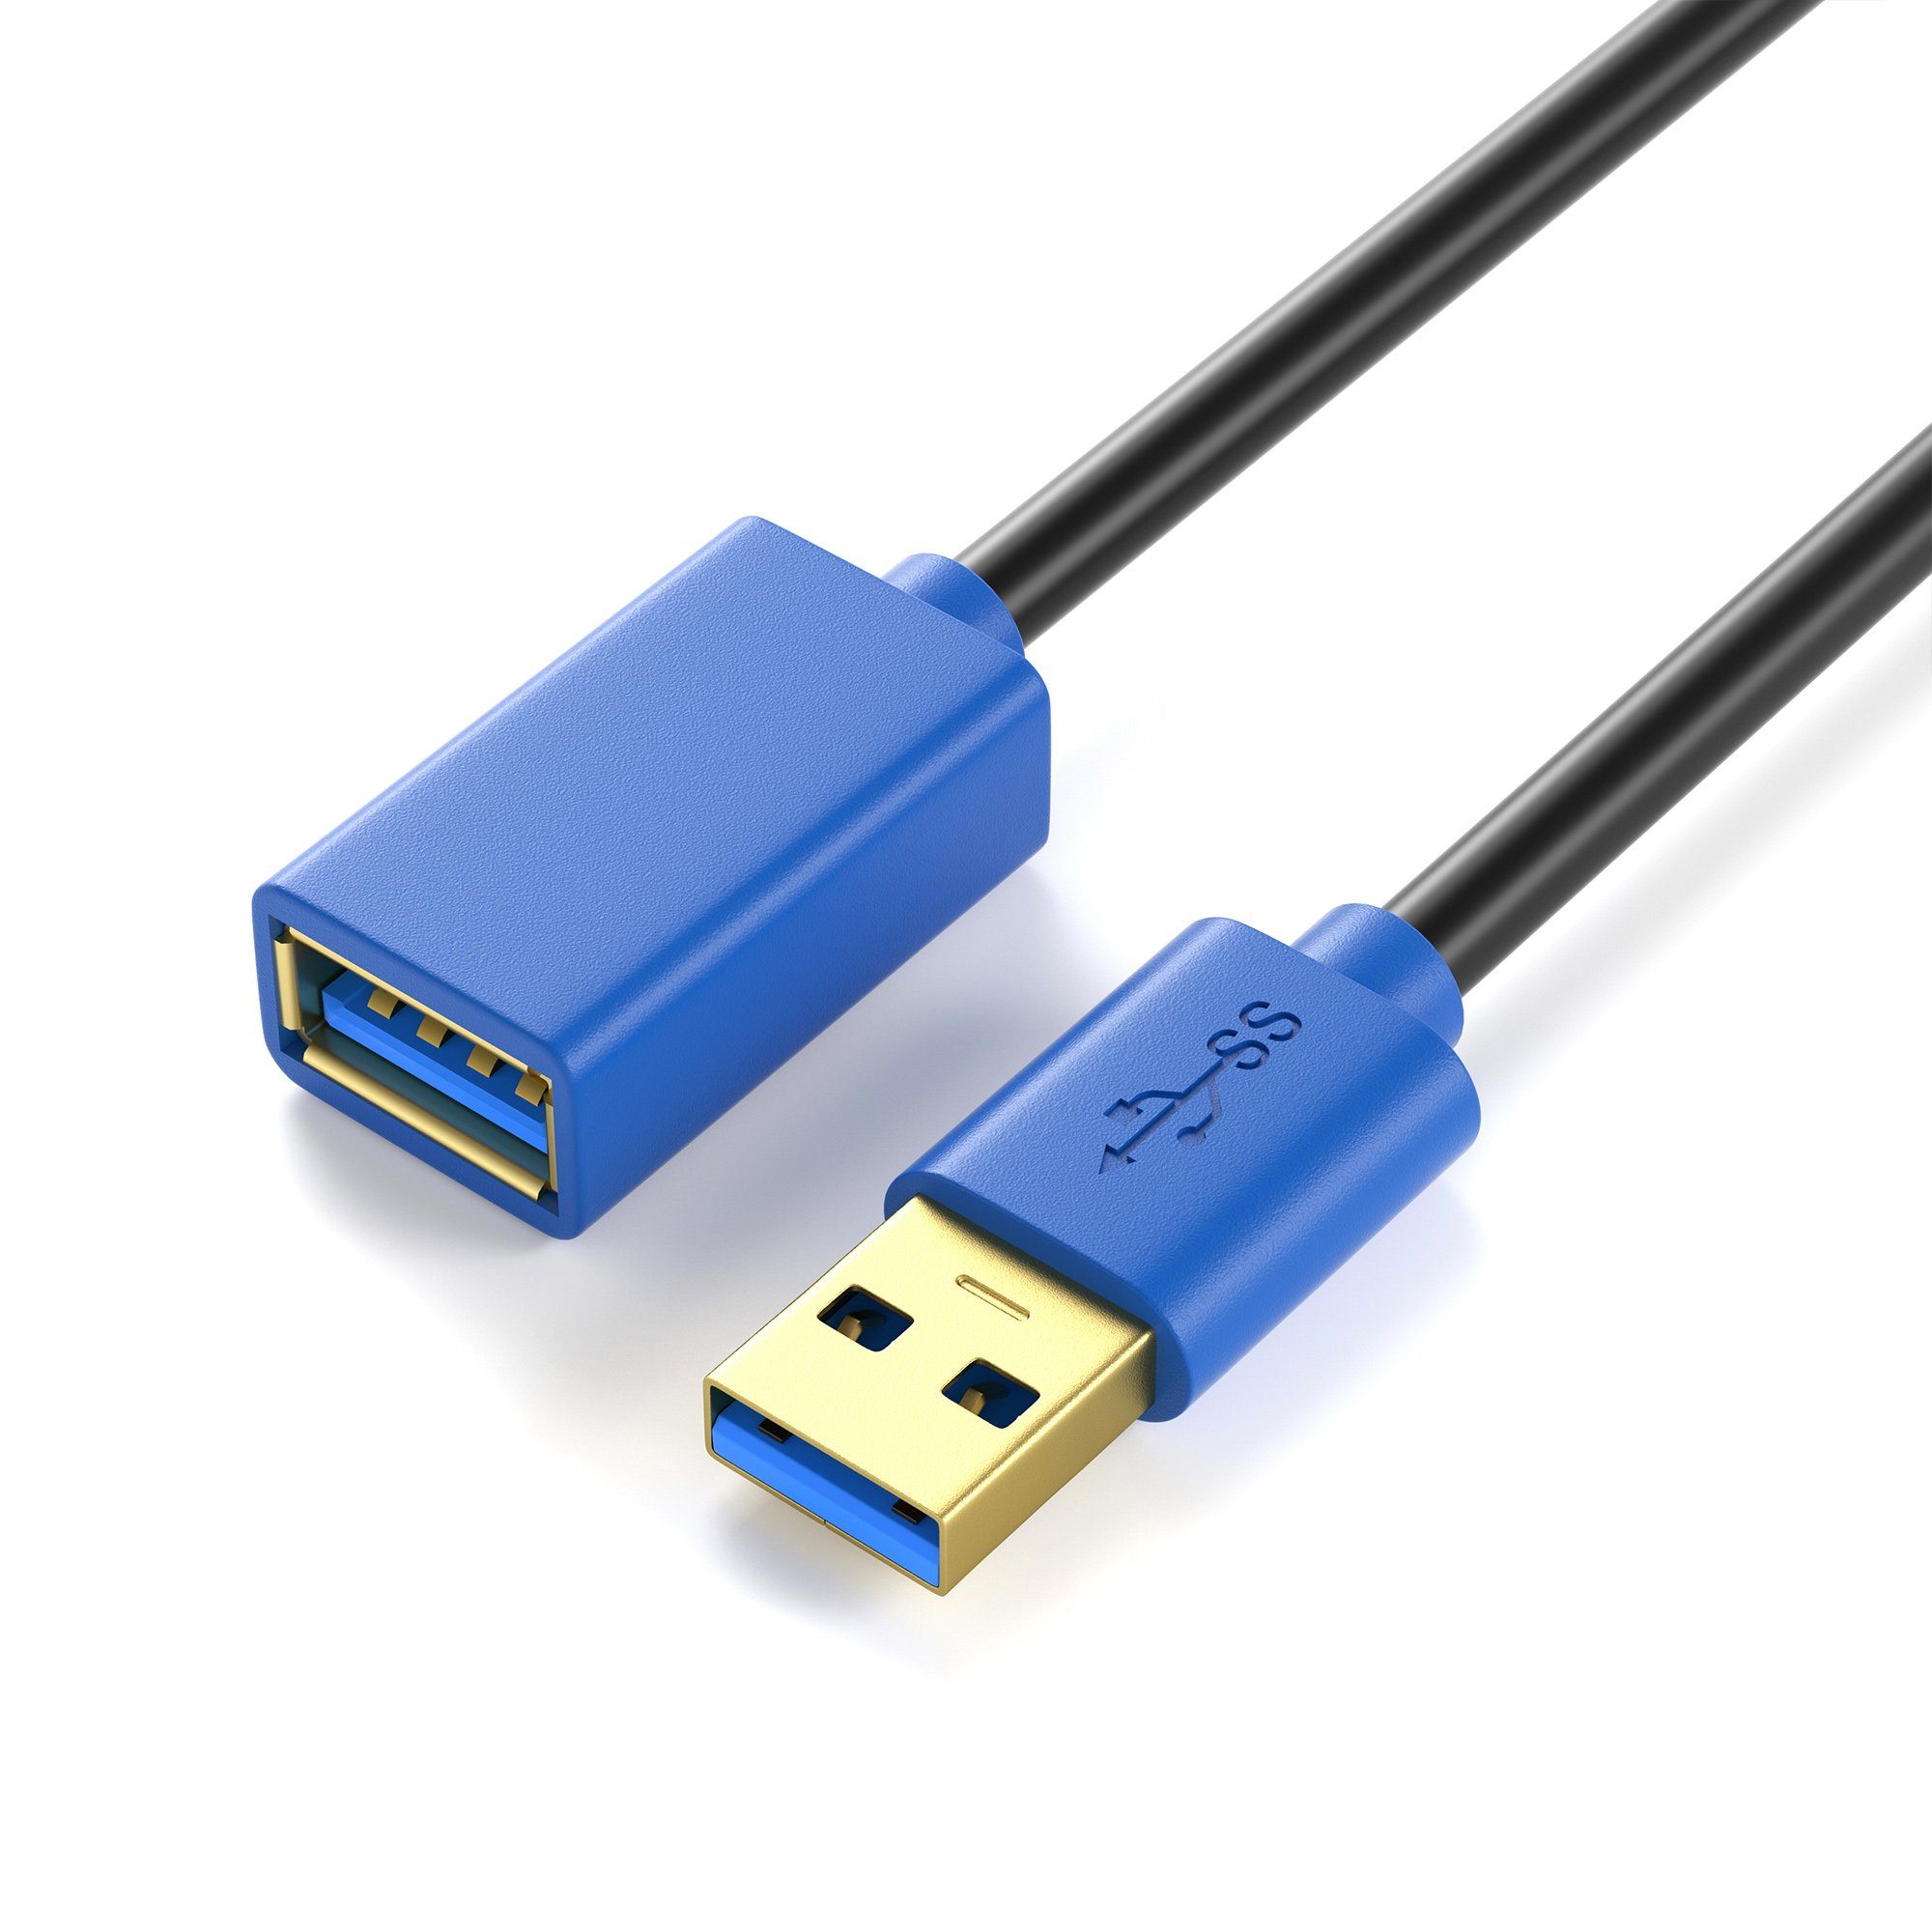 JAMEGA USB 3.0 Verlängerungskabel, USB-A Stecker zu USB-A Buchse Erweiterung USB-Kabel, USB, USB A (150 cm)